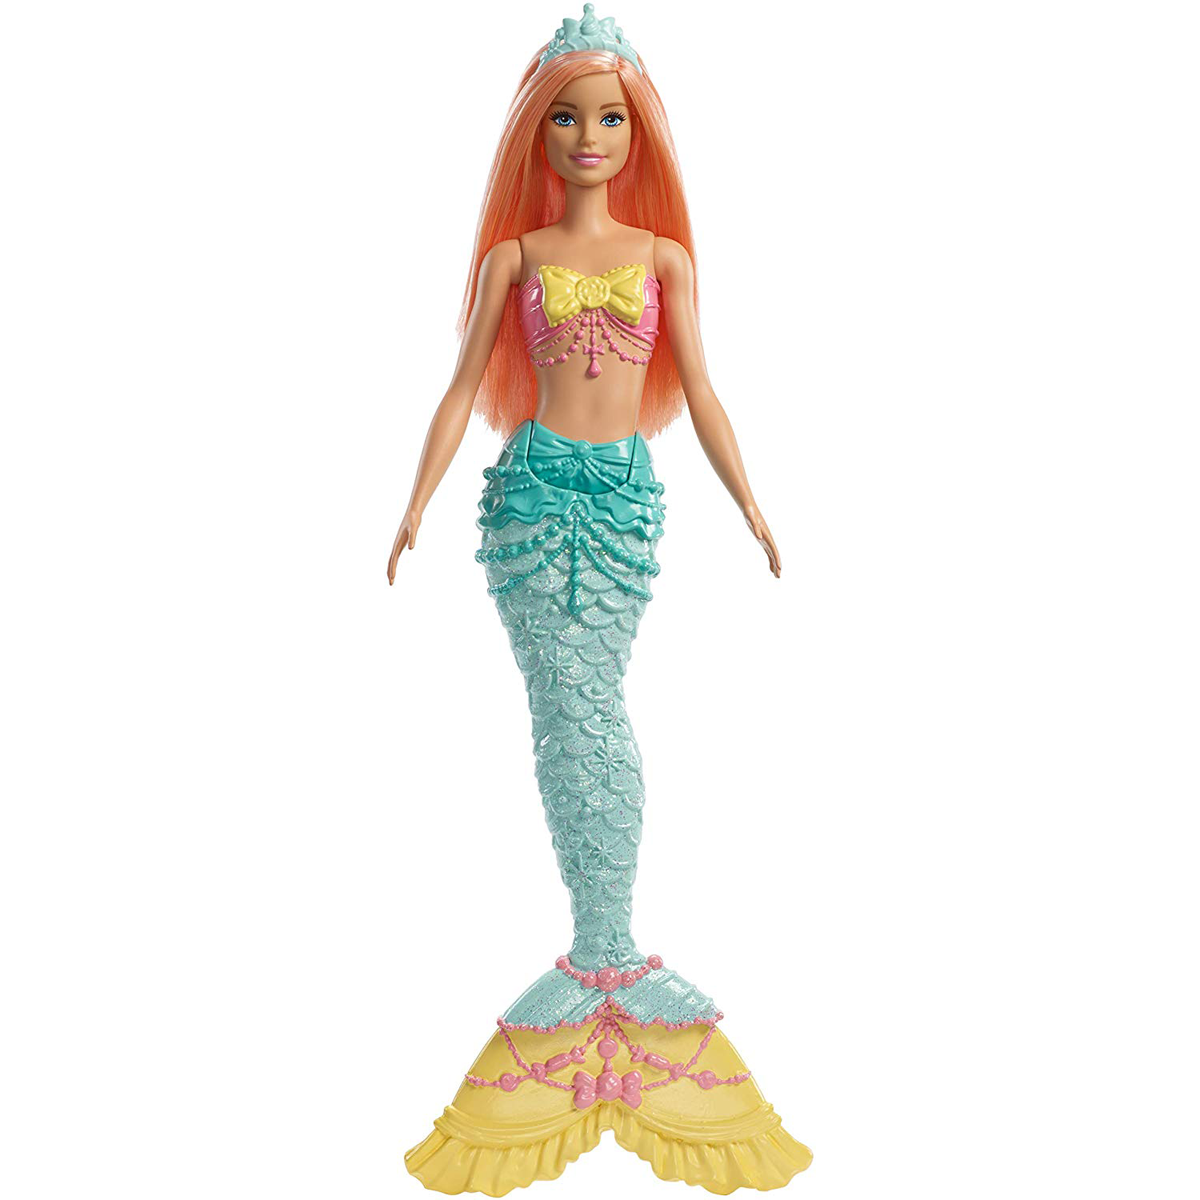  Barbie Mermaid Doll - Coral Hair